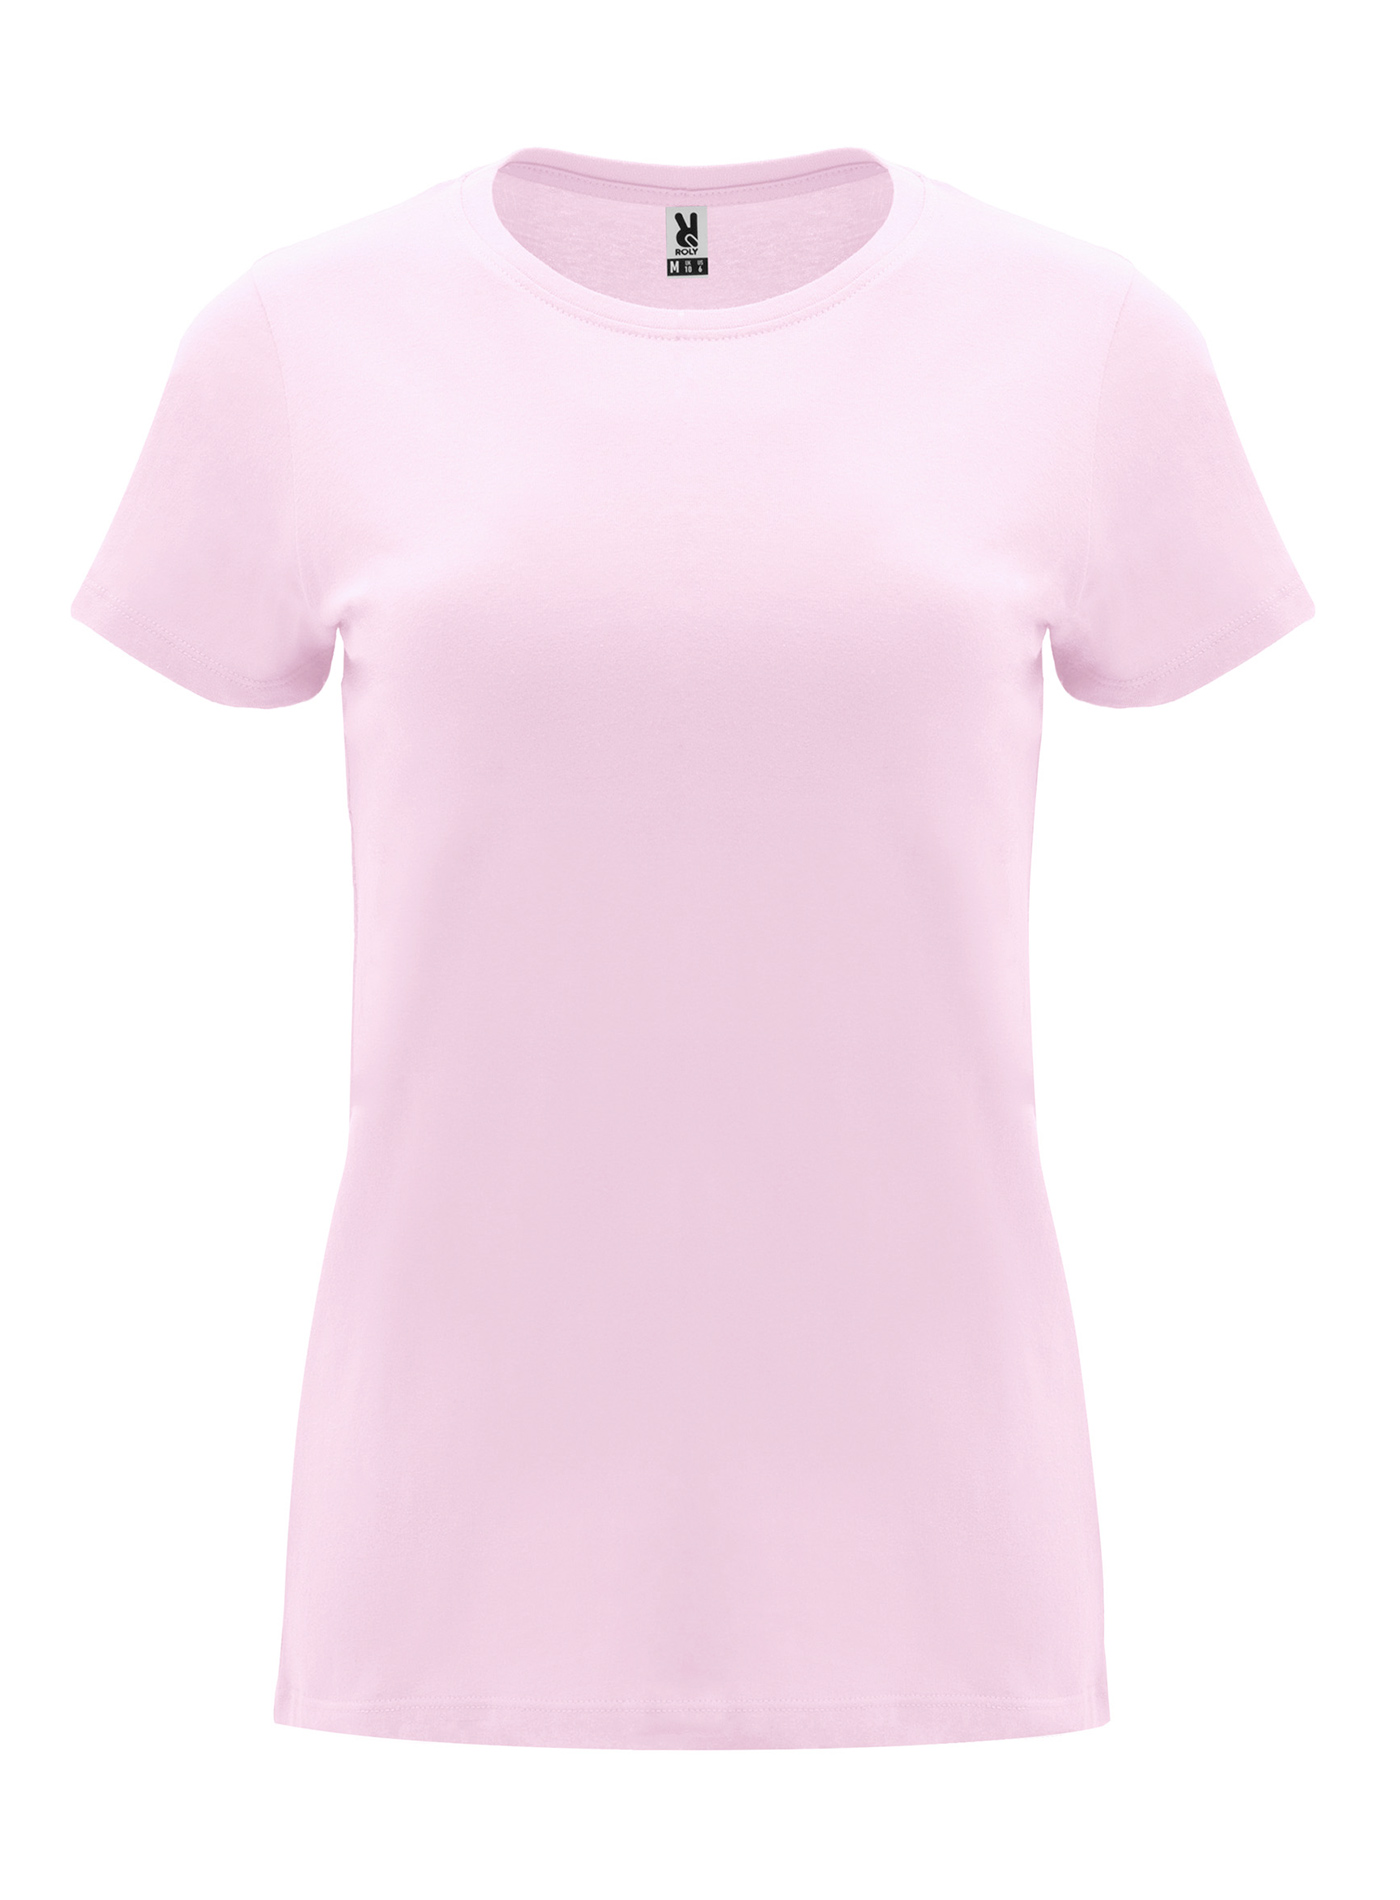 Dámské tričko Roly Capri - Světle růžová XL